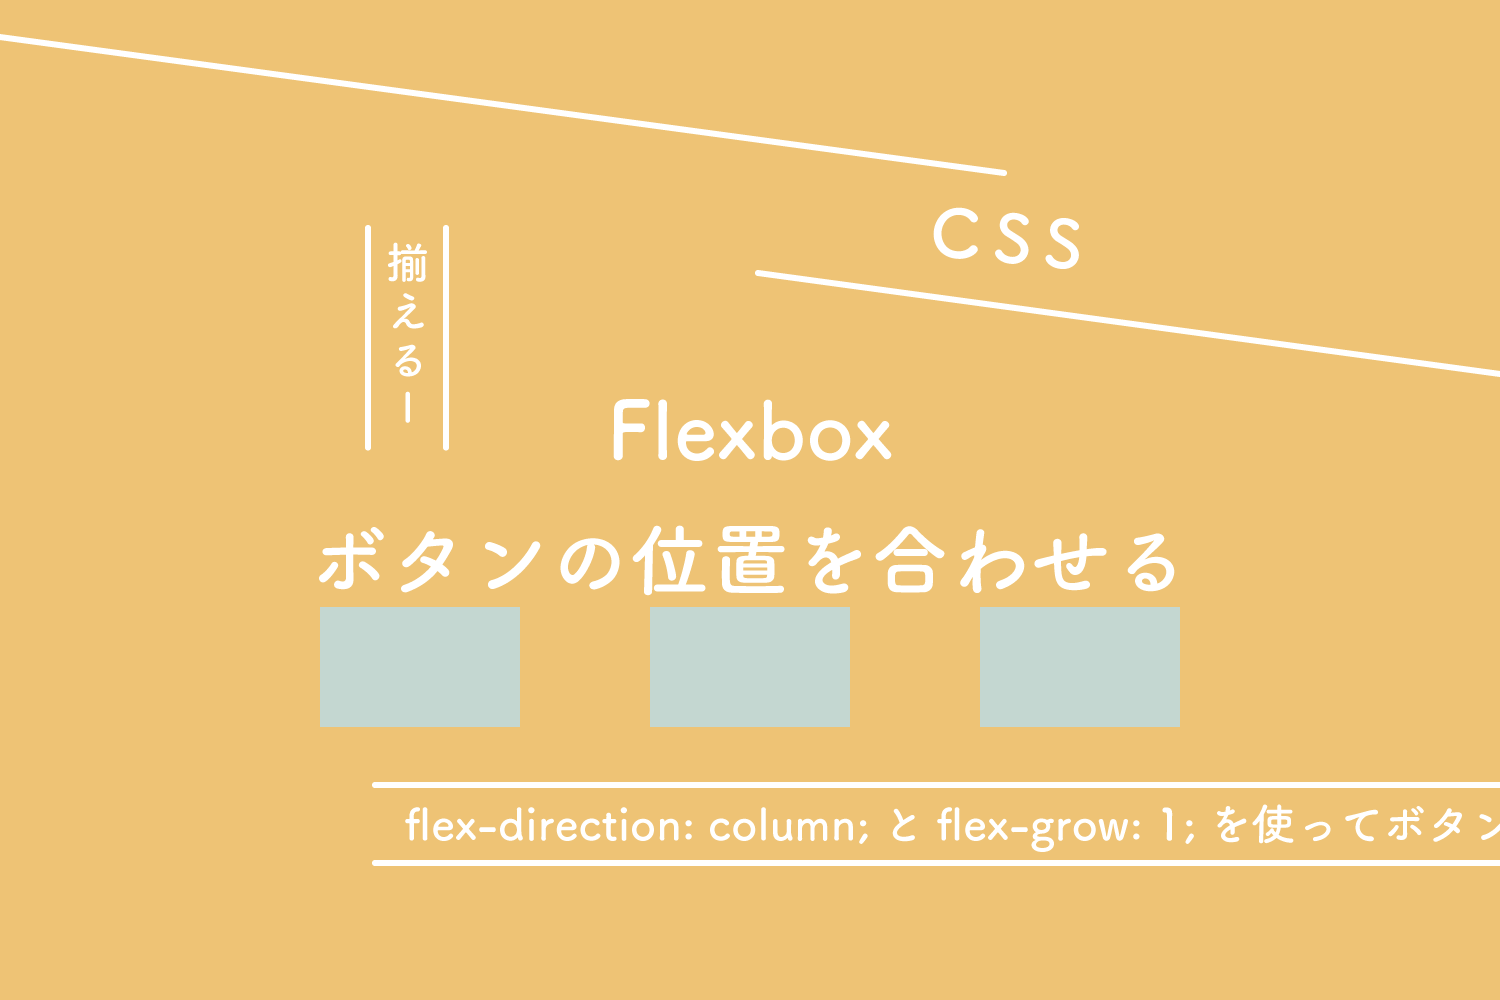 【CSS】Flexbox、flex-direction: column;とflex-grow: 1;を使ってボタンの位置を合わせる